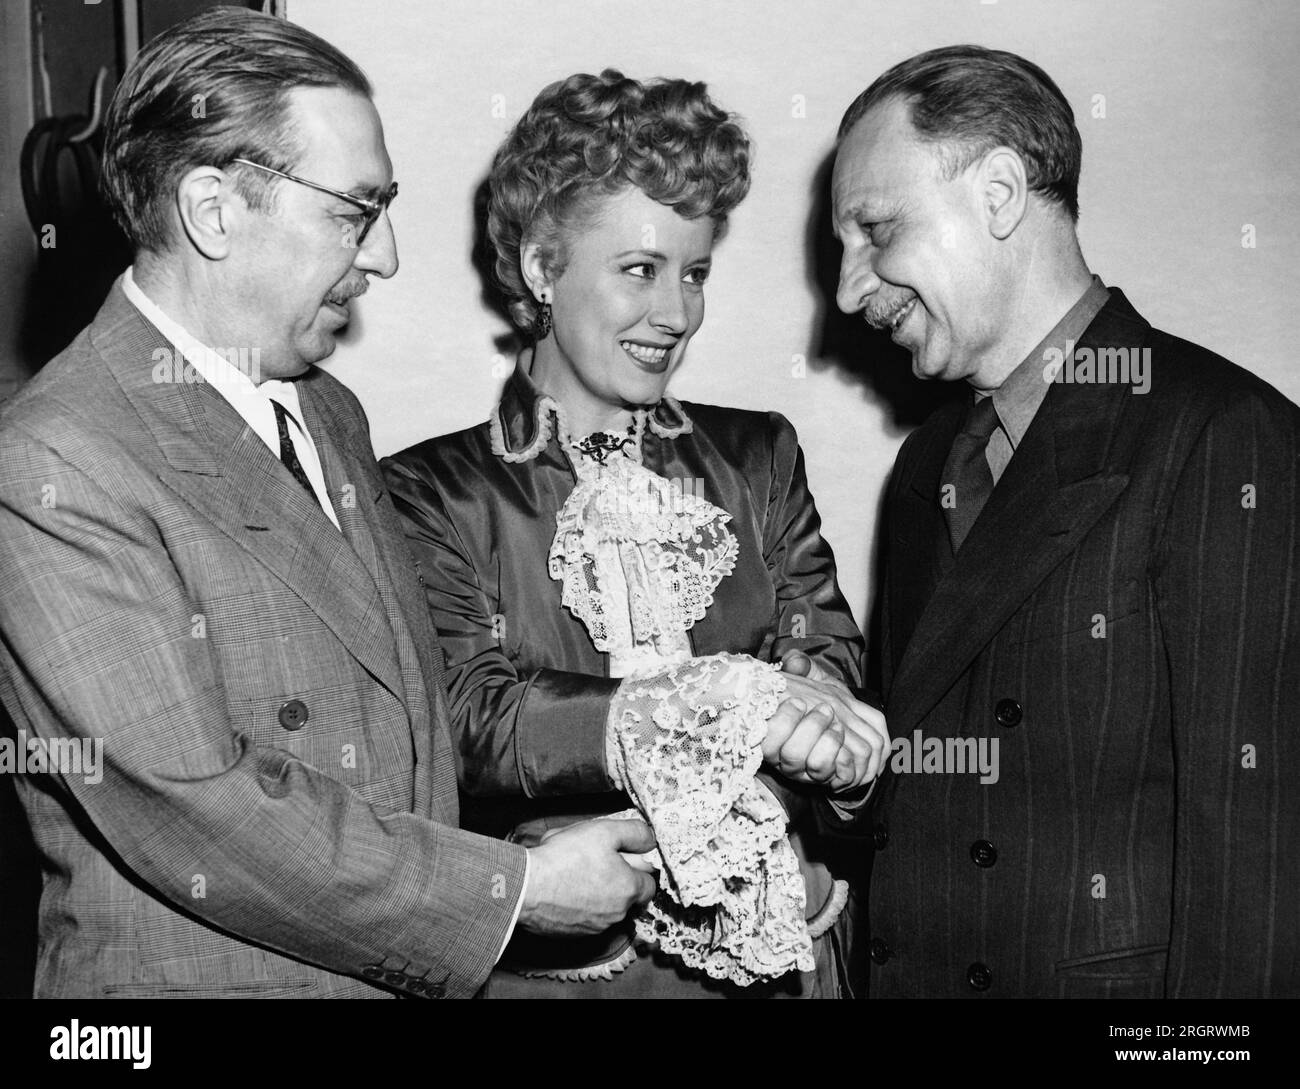 Hollywood, Californie : 6 mai 1946 l'actrice Irene Dunne félicite les auteurs Howard Lindsey (G) et Russel Crouse (D) pour avoir reçu le prix Pulitzer pour leur pièce, 'State of the Union'. Dunne joue dans le film, "Life with Father", basé sur la pièce des deux auteurs. Banque D'Images